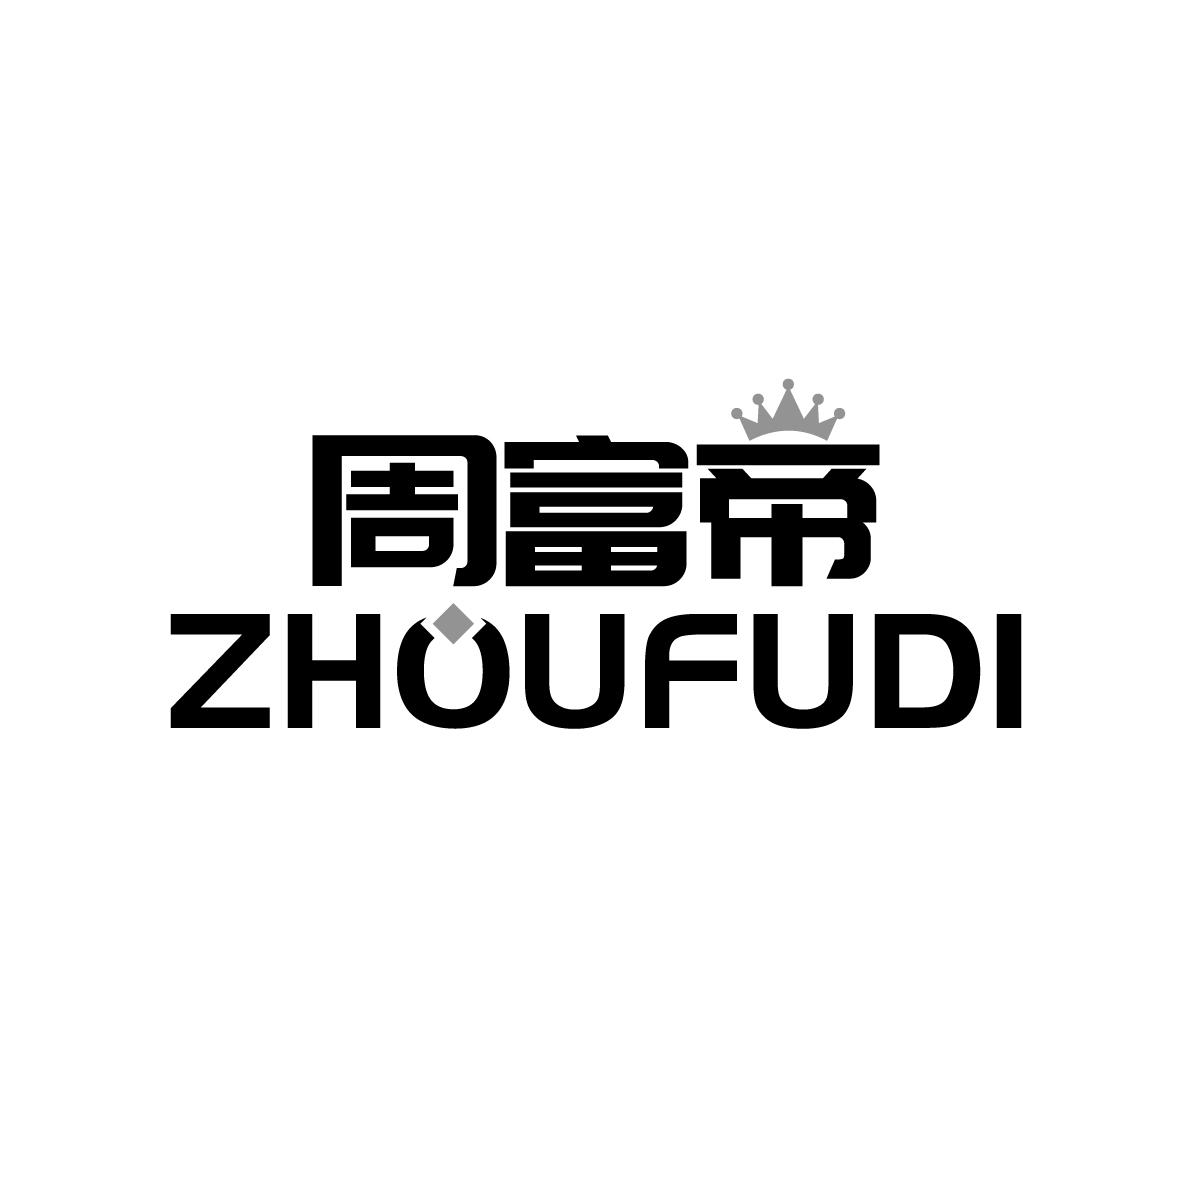 周富帝ZHOUFUDI钻石商标转让费用买卖交易流程